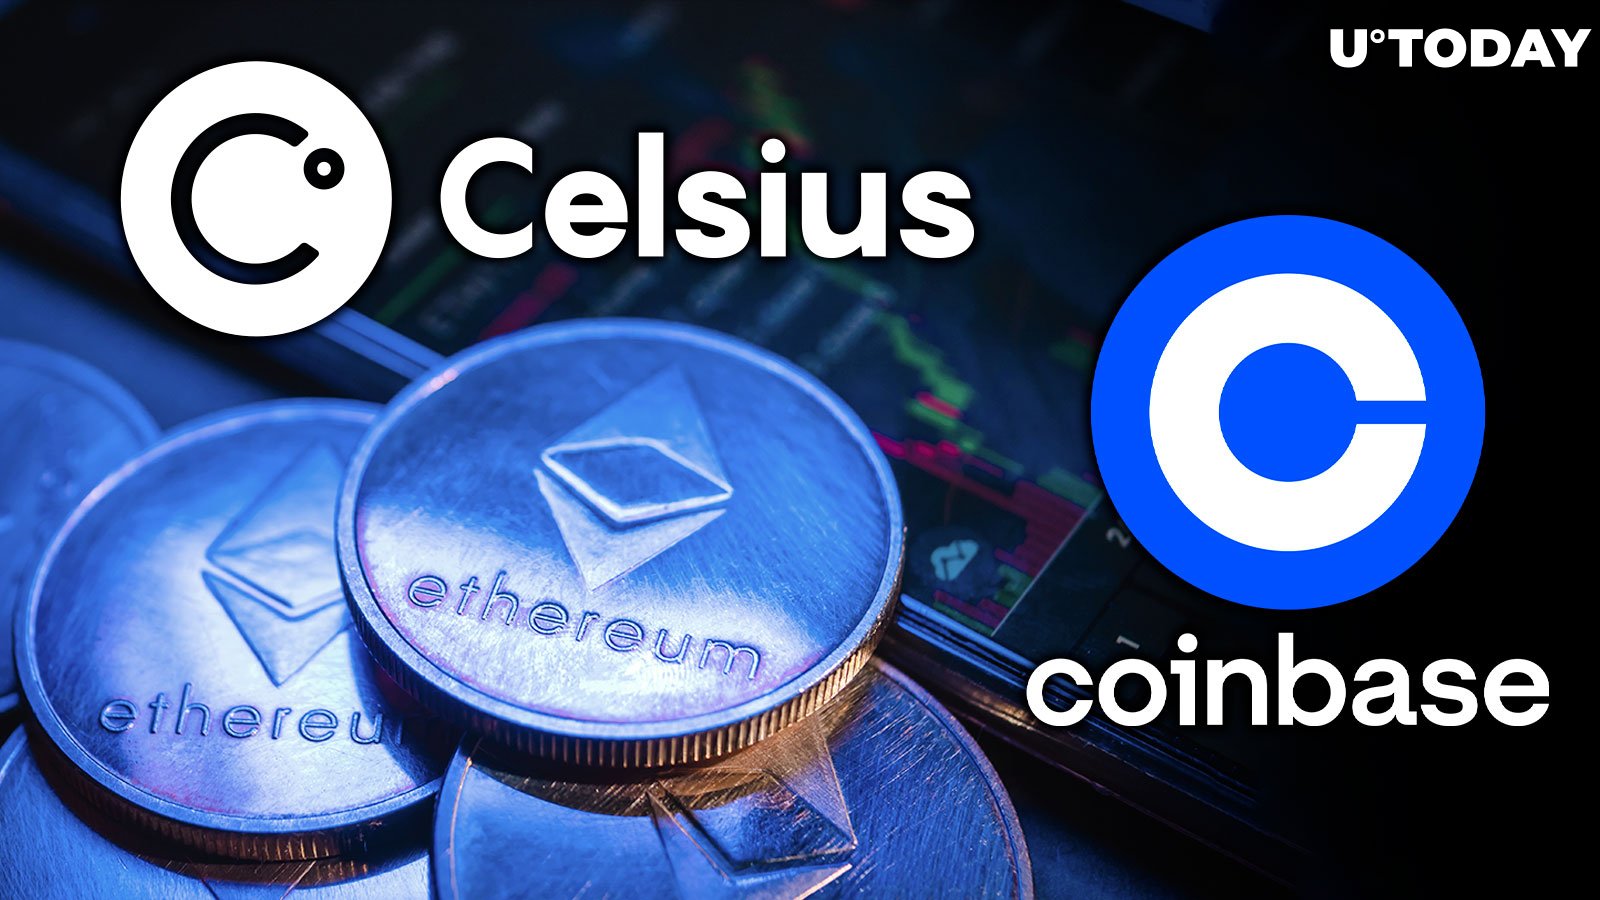 Celsius shkarkon Ethereum me vlerë 40 milionë dollarë në Coinbase - Si do të reagojë çmimi?